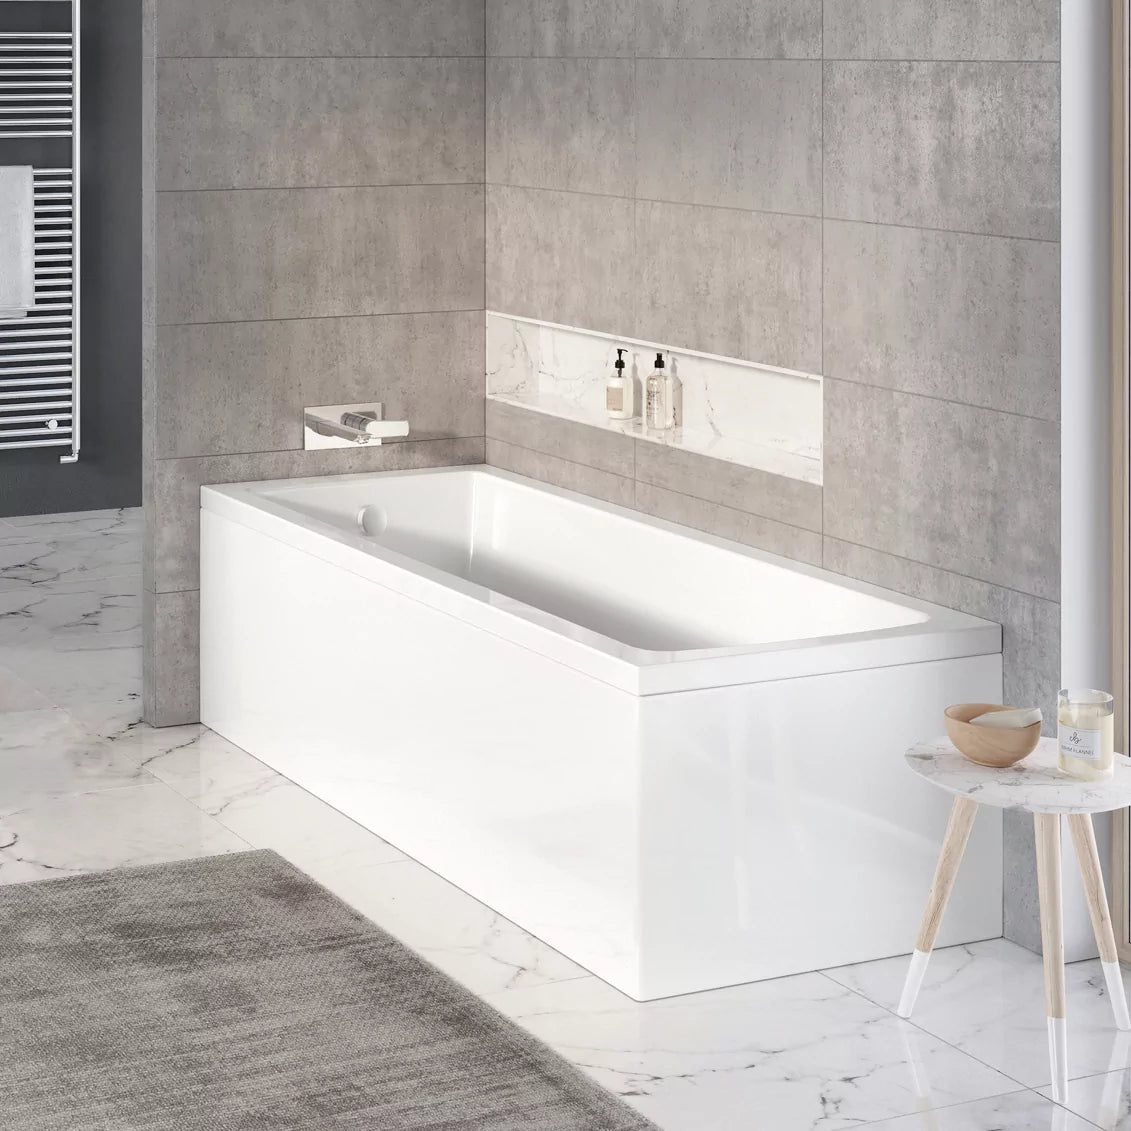 Tissino Lorenzo Premium Single Ended Acrylic Bath 1700mm x 800mm TLO-505 TLO-515